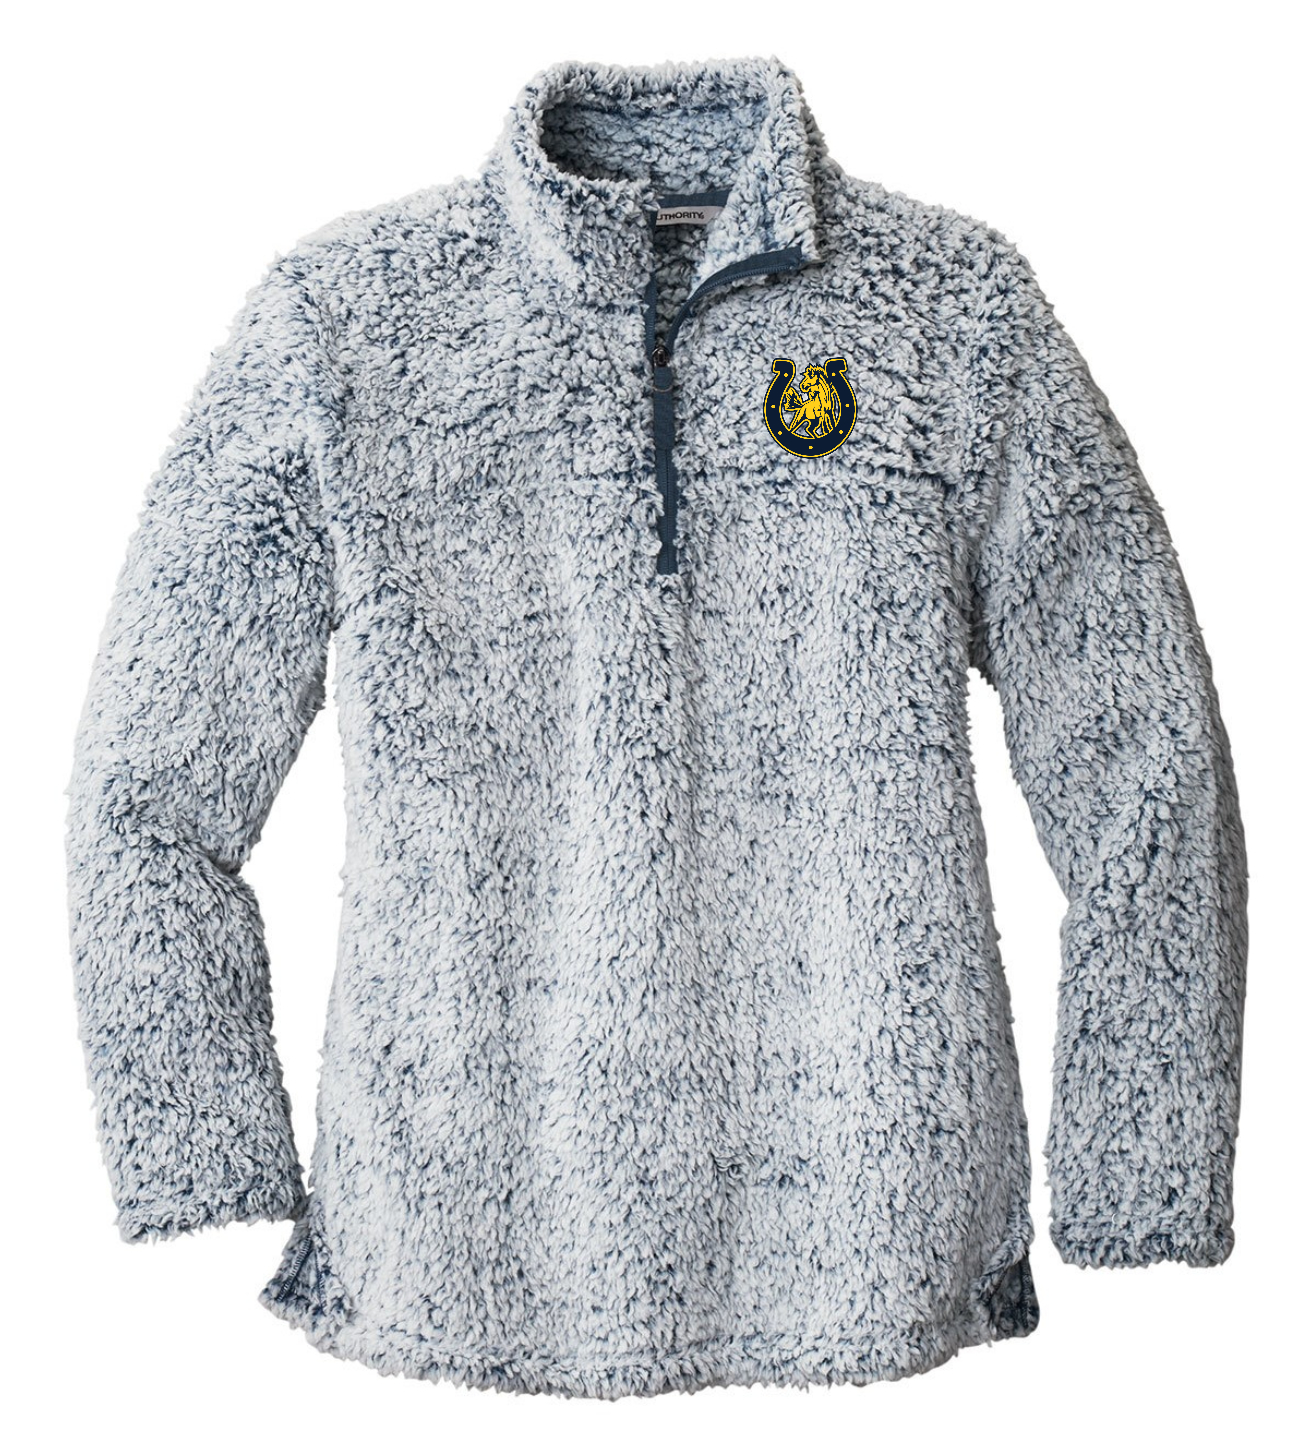 Cedar Cliff Standard Ladies Quarter-Zip Fleece Pullover